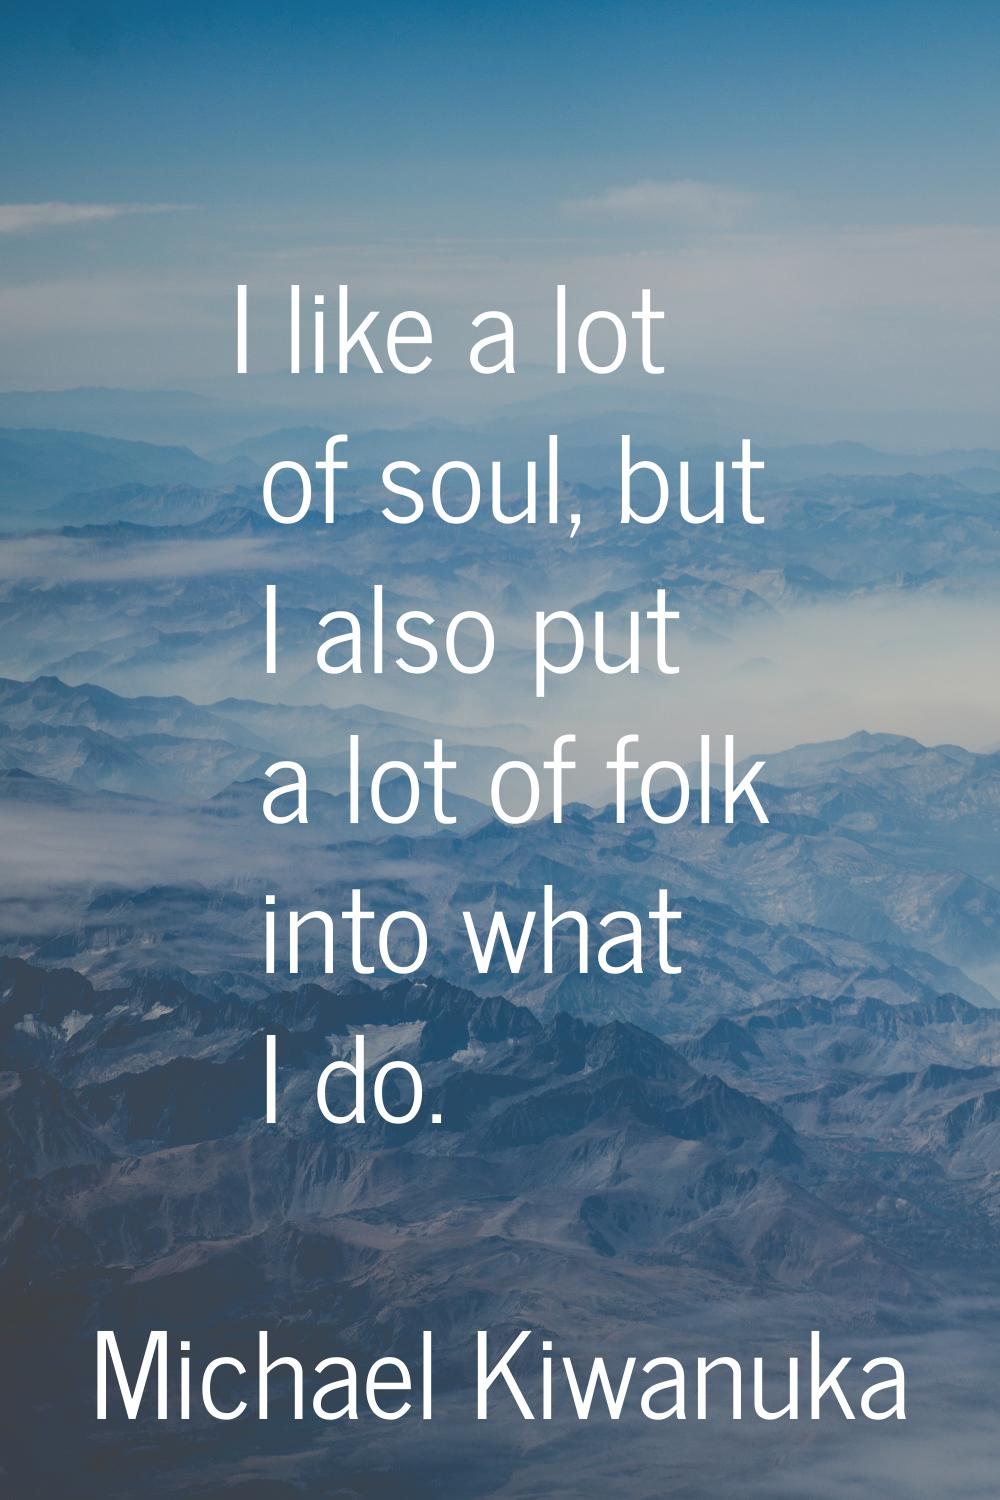 I like a lot of soul, but I also put a lot of folk into what I do.